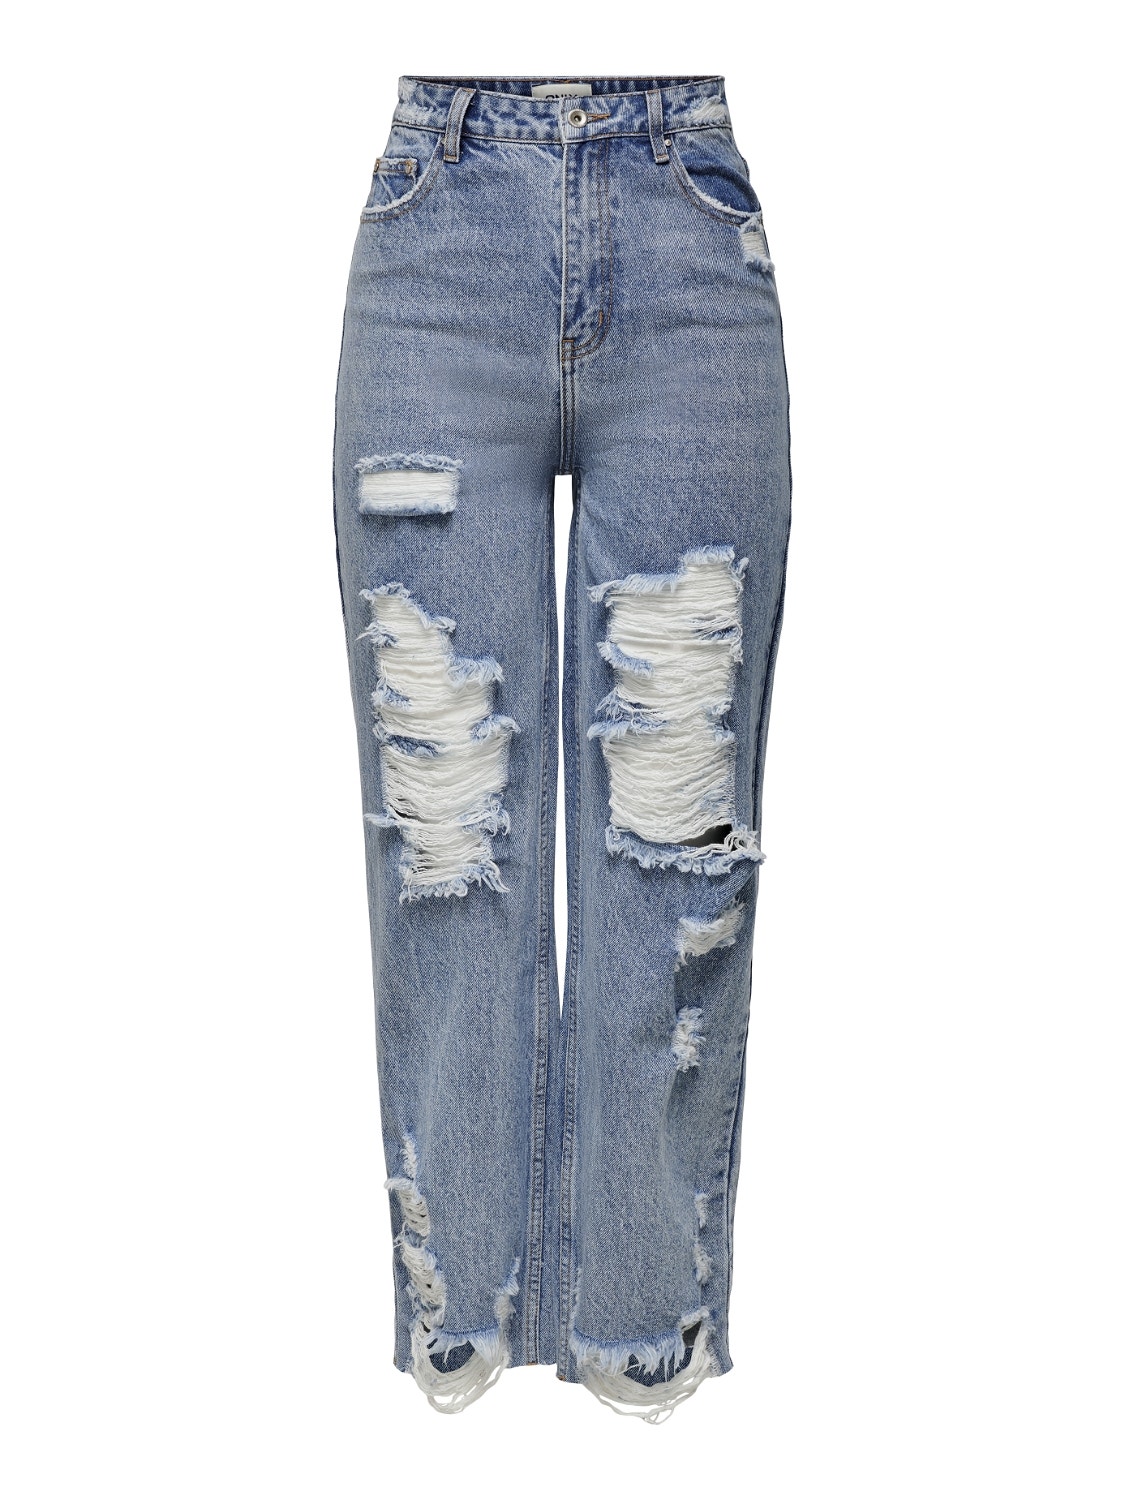 ONLY ONLDad highwaist destroyed Flared Jeans -Medium Blue Denim - 15252688